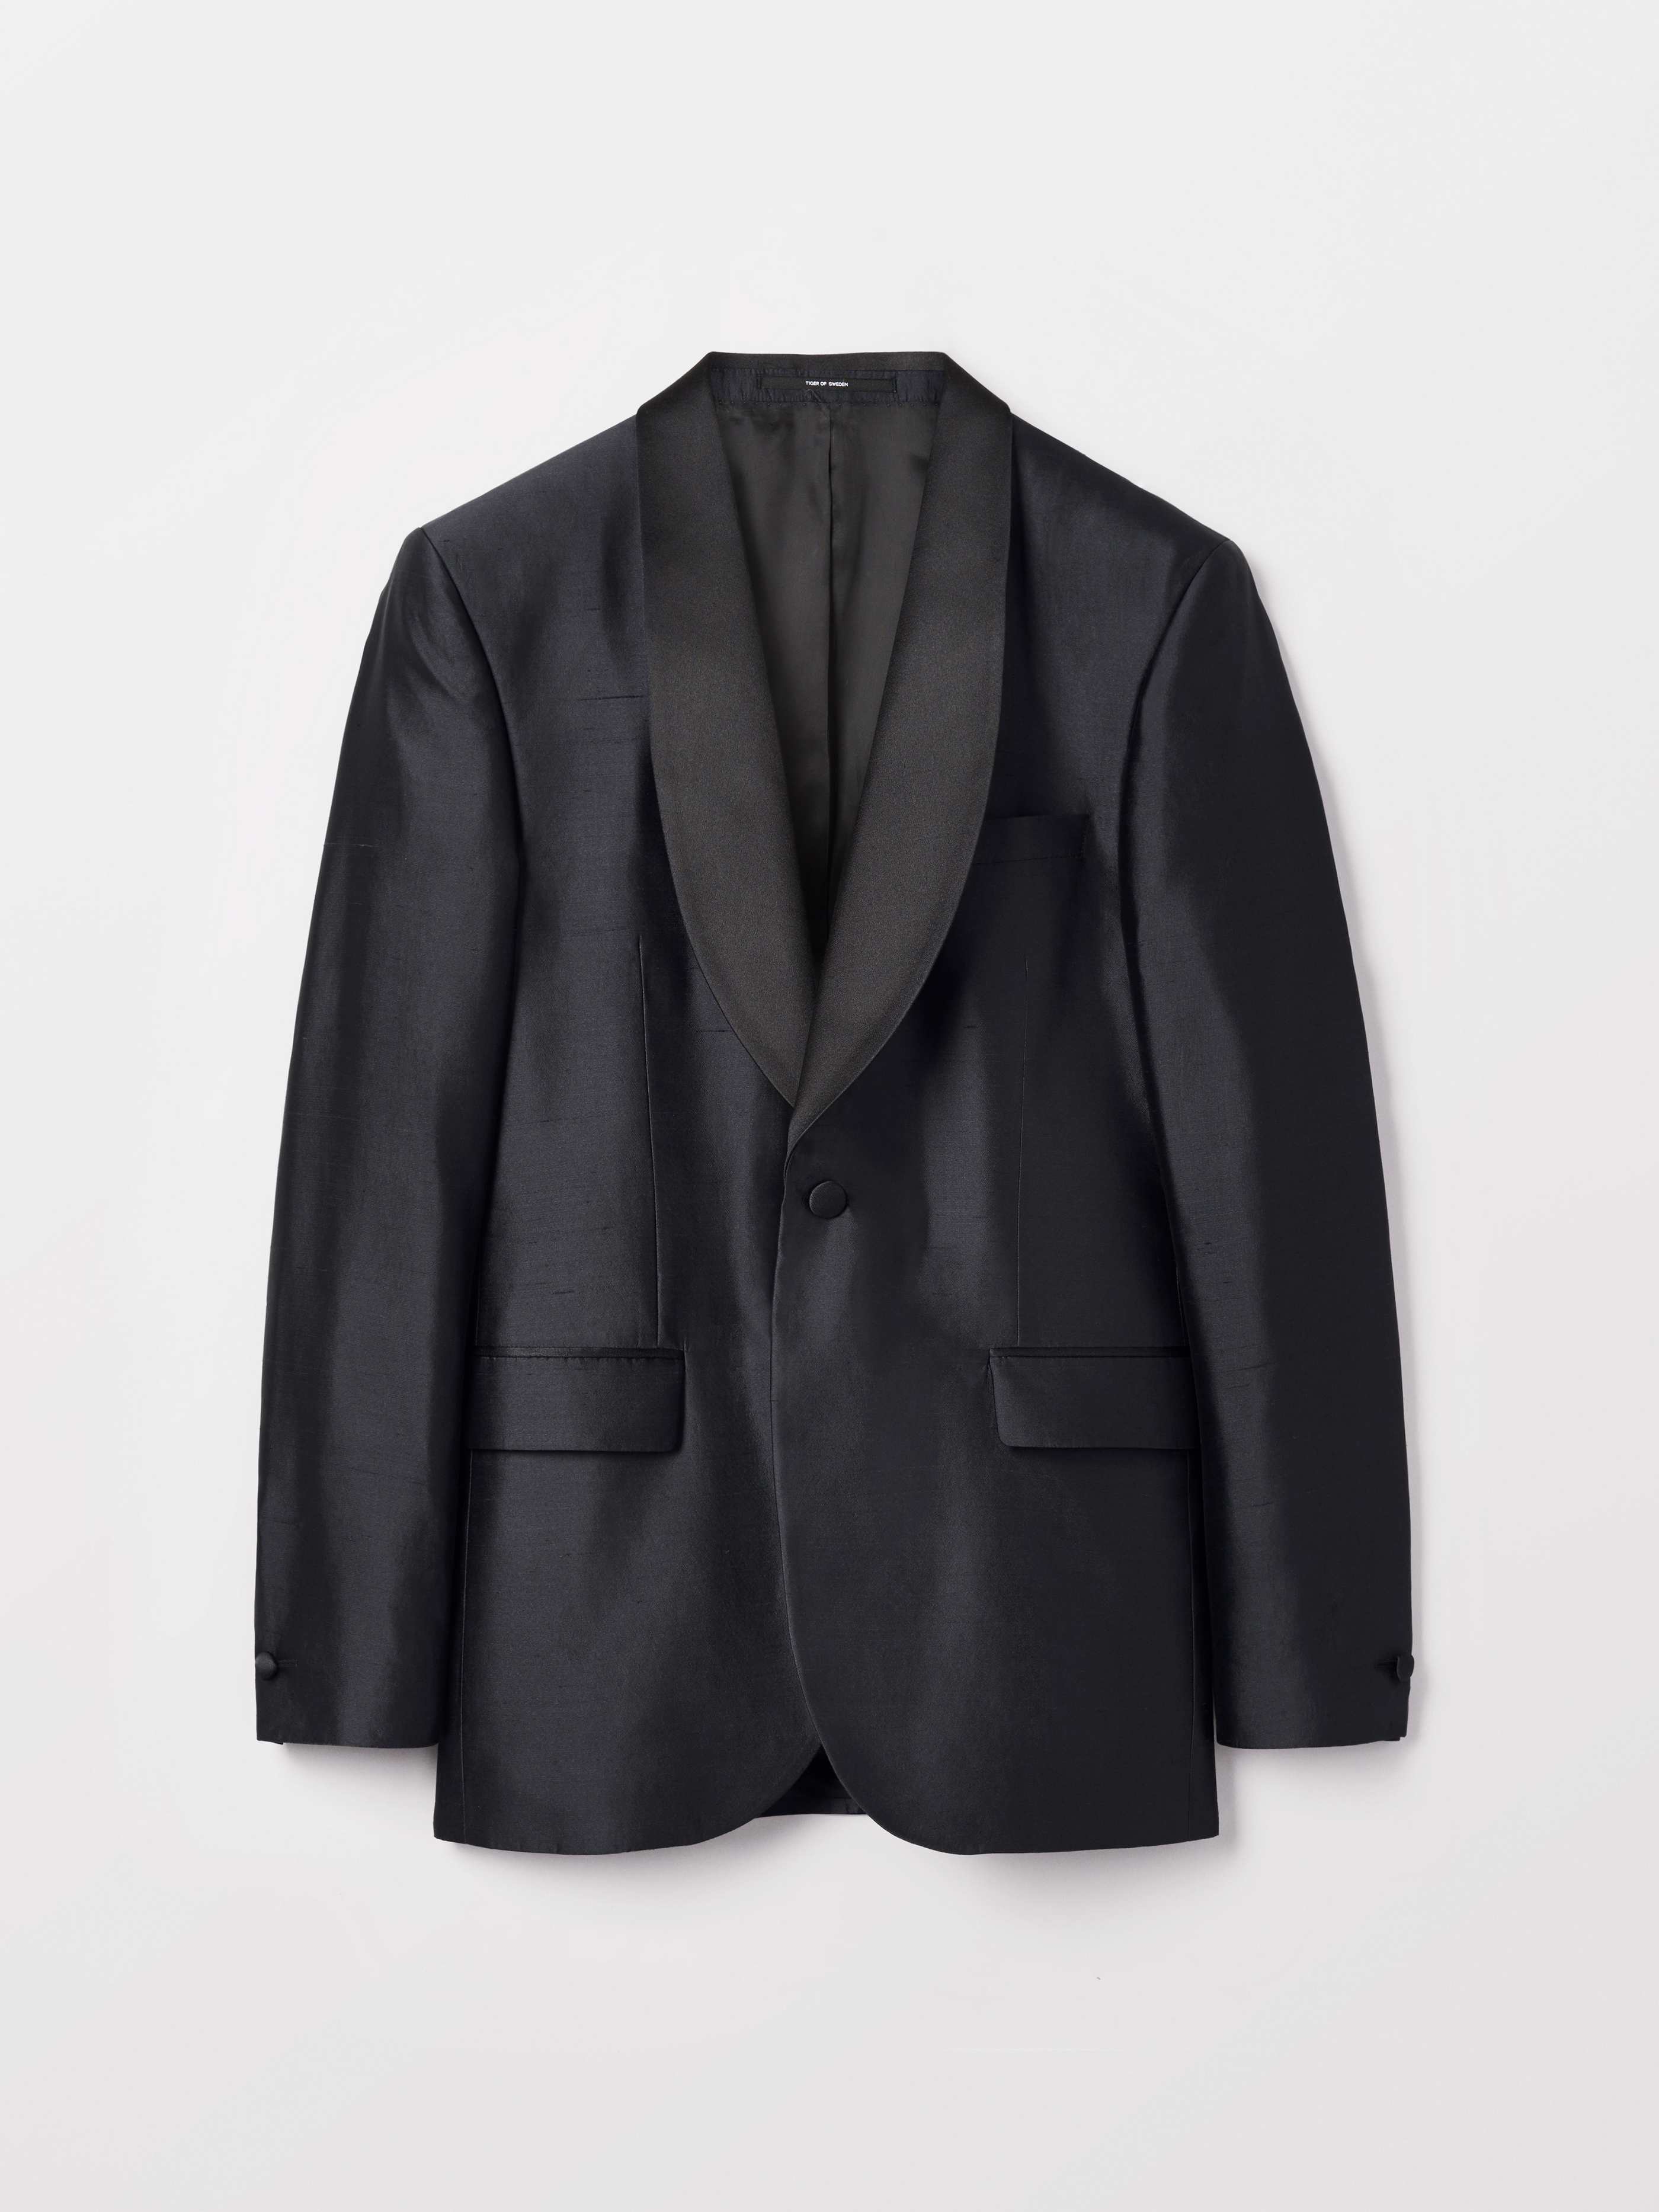 2018 Tuxedo Blazer - Buy Blazers online